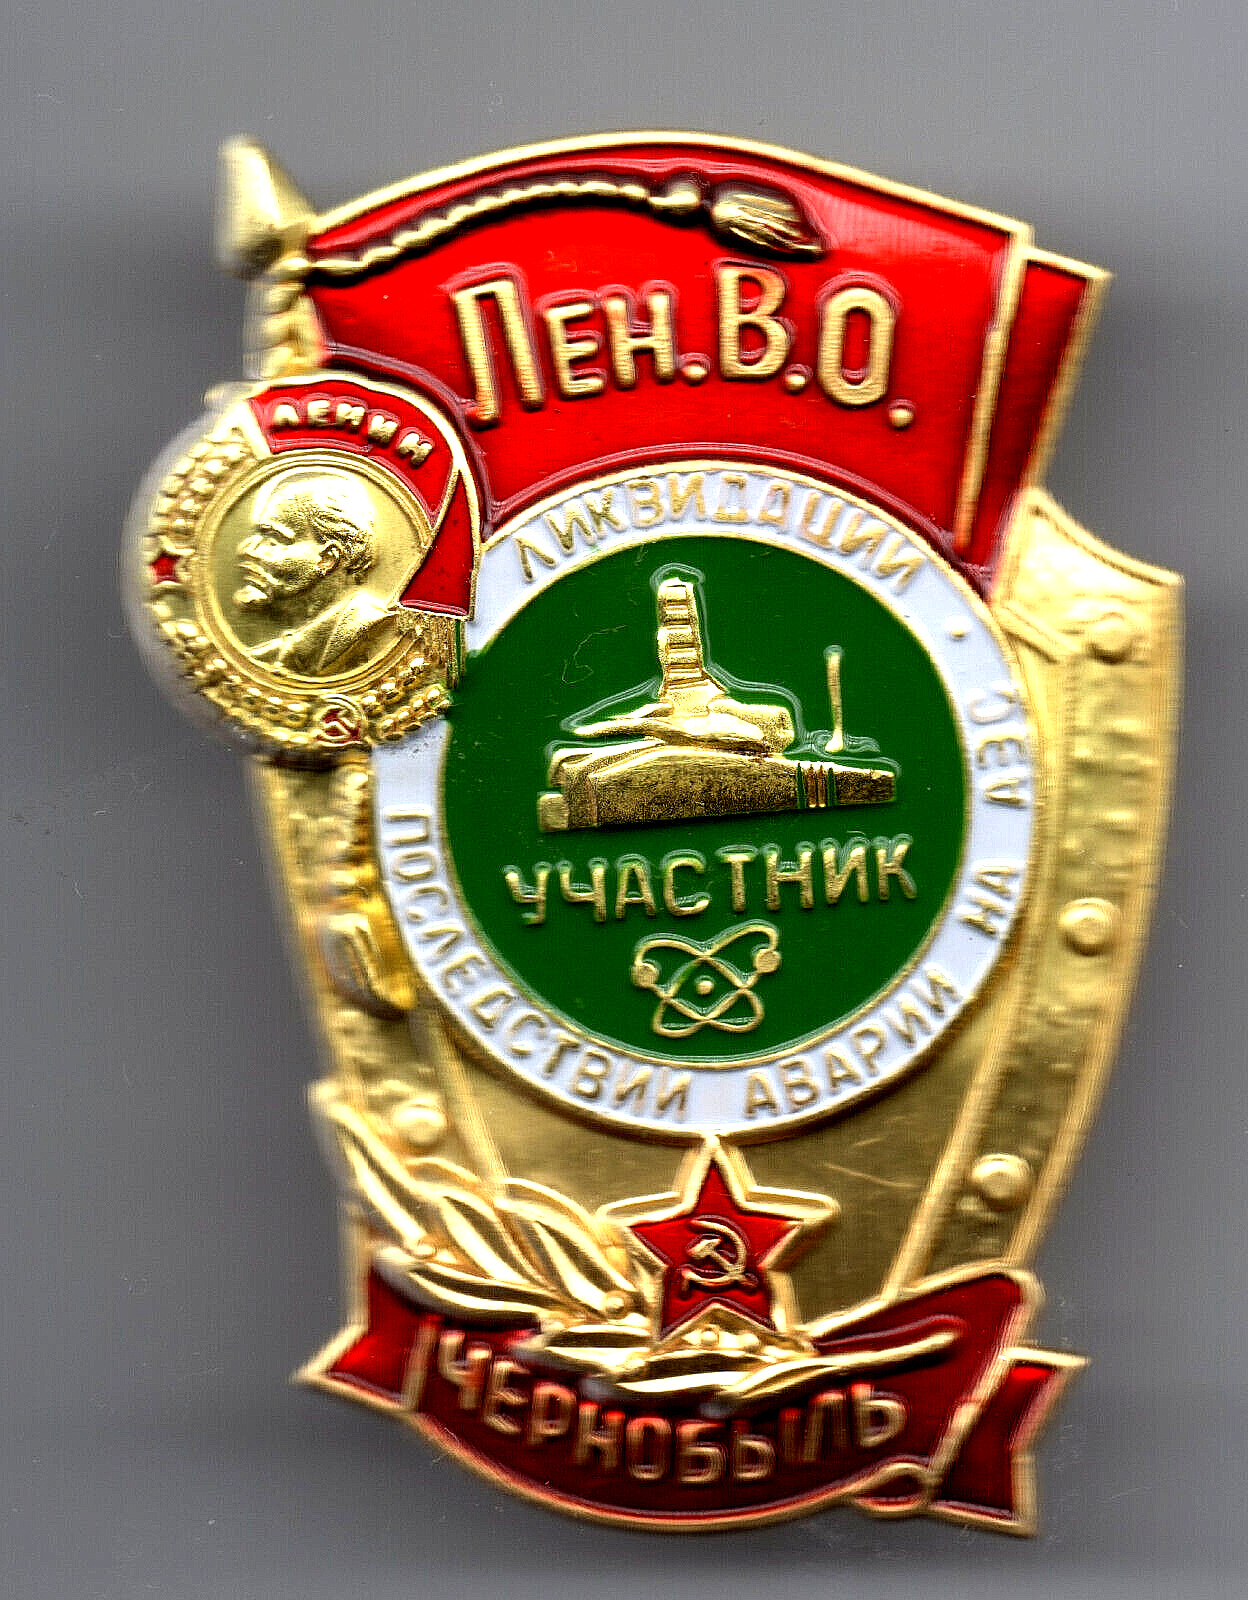 Chernobyl Disaster Military Gold Badge Medal Lenin Old Retro Ukraine War Kyiv UK